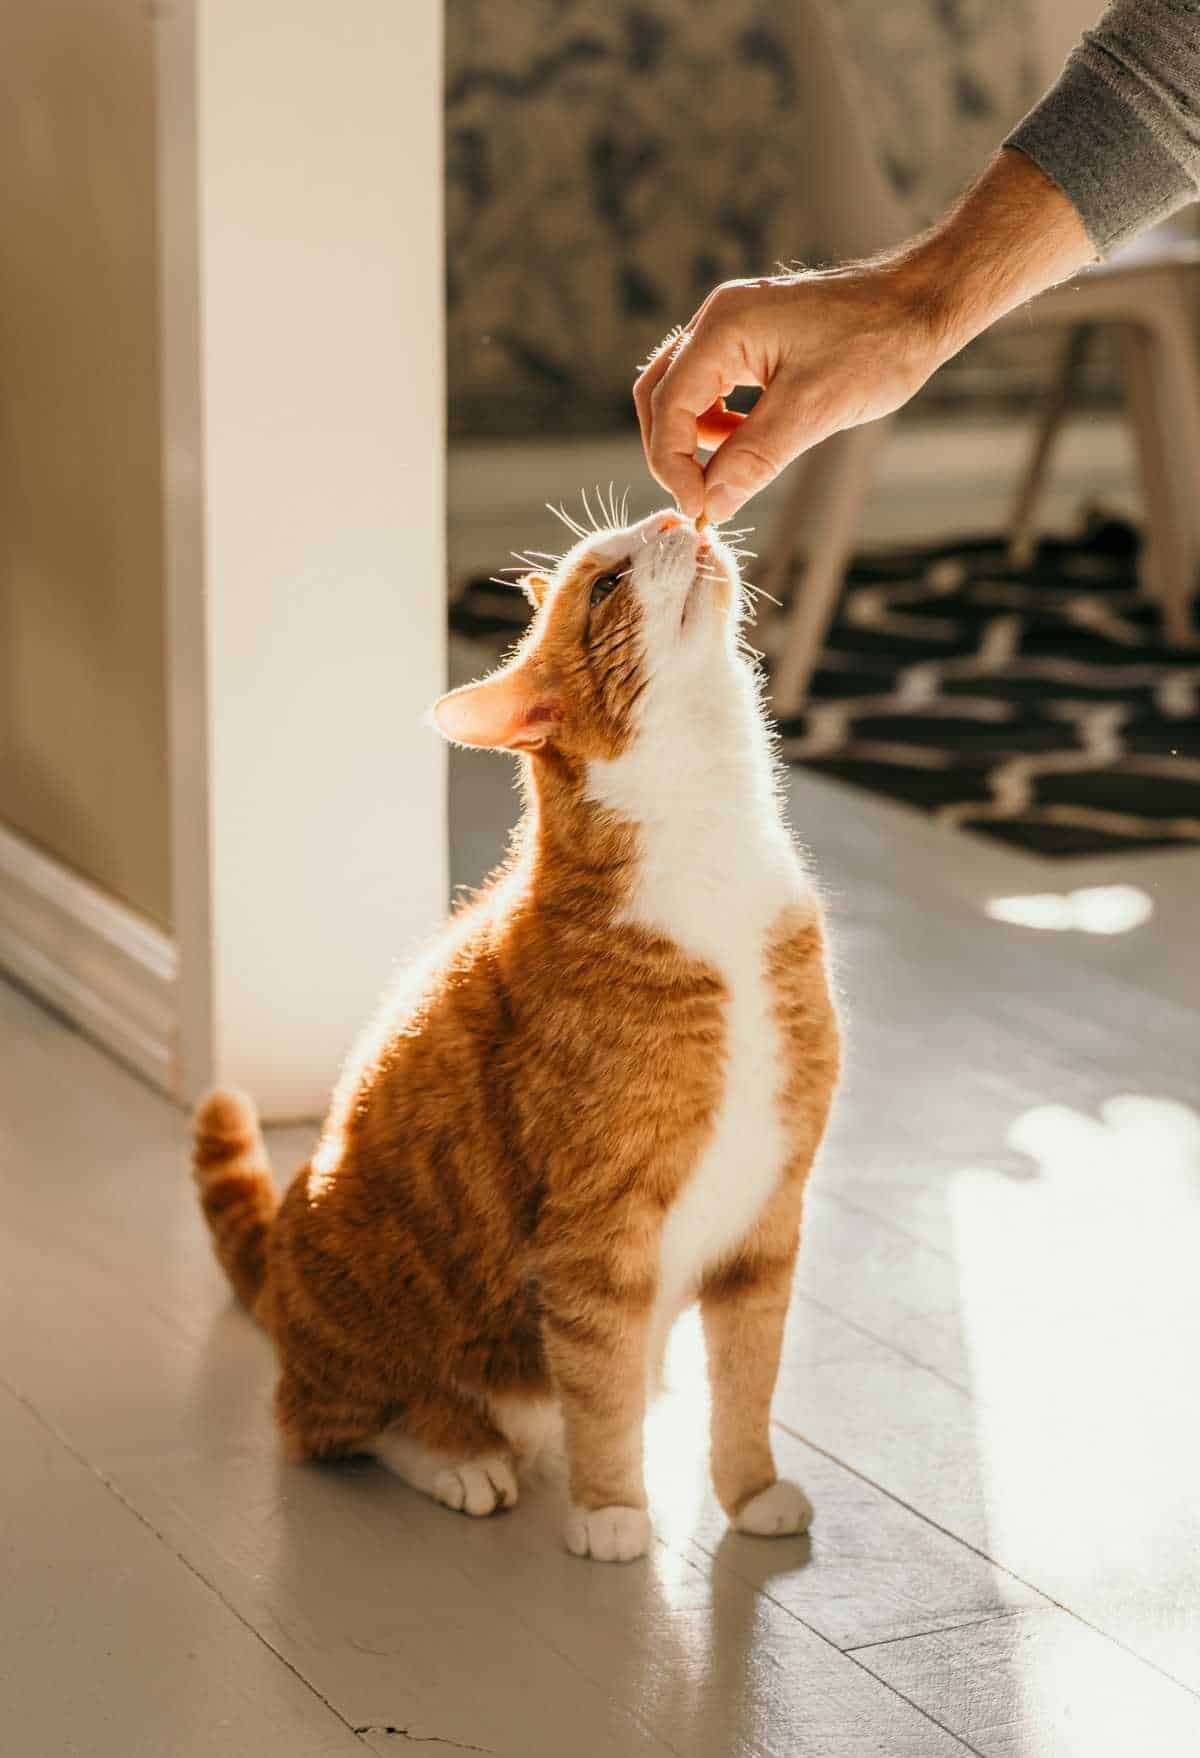 DIY Cat Treat Recipes